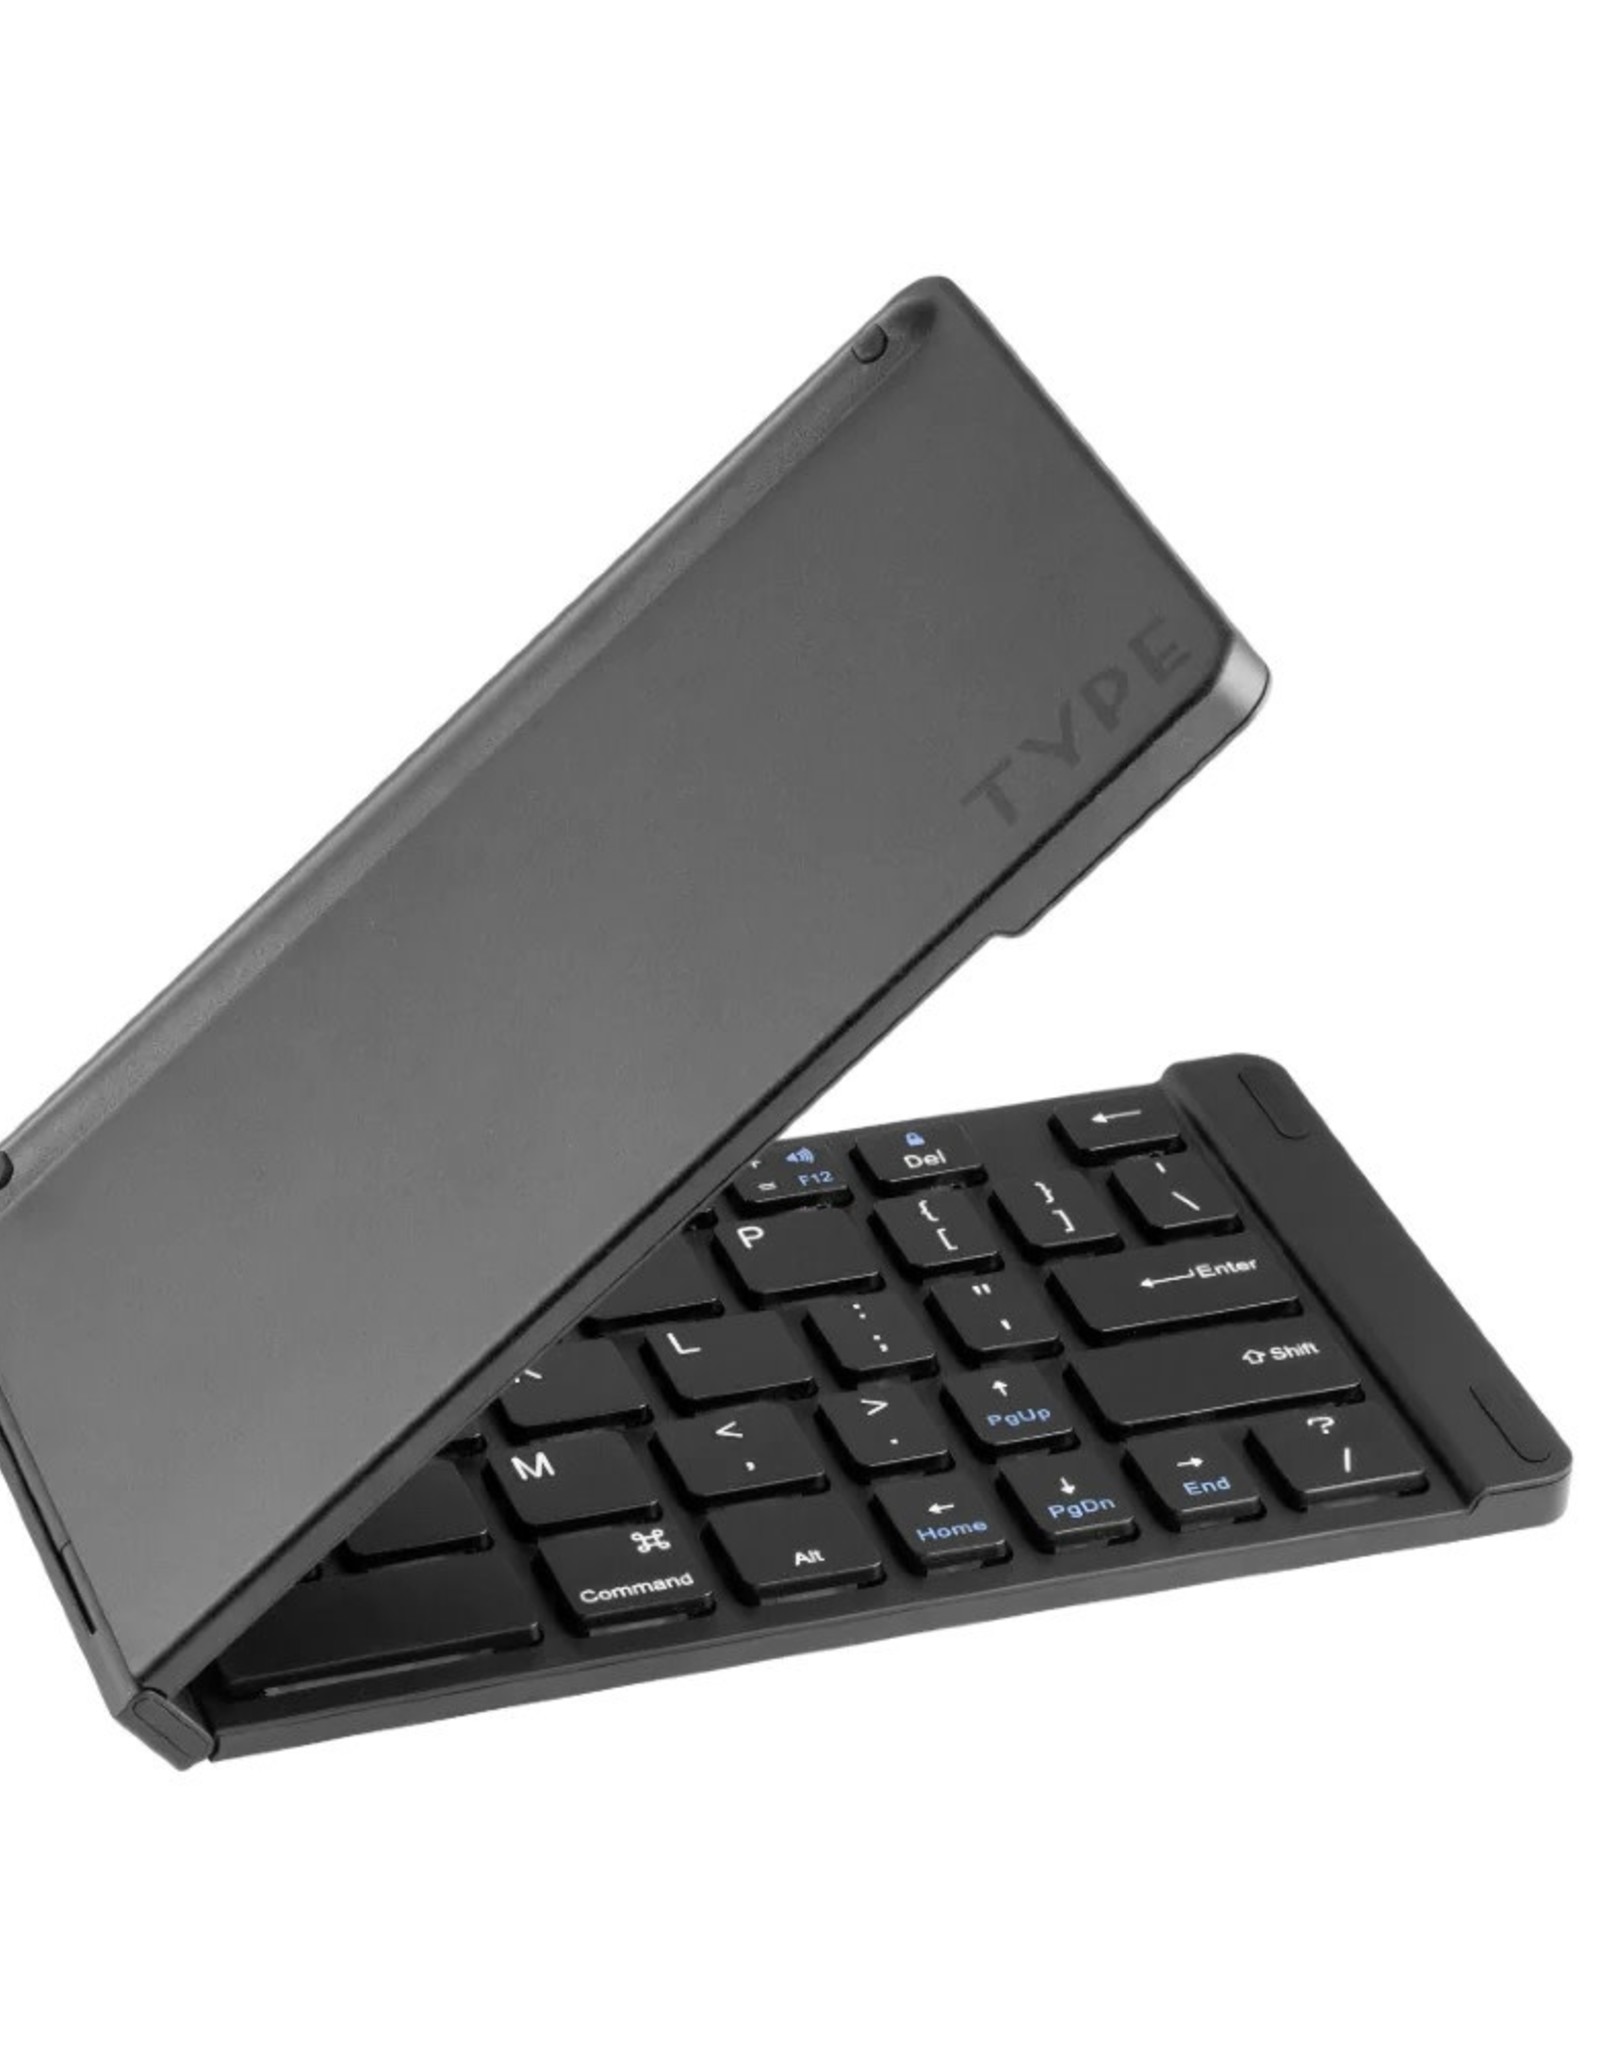 Fashionit Type Wireless Keyboard, Black